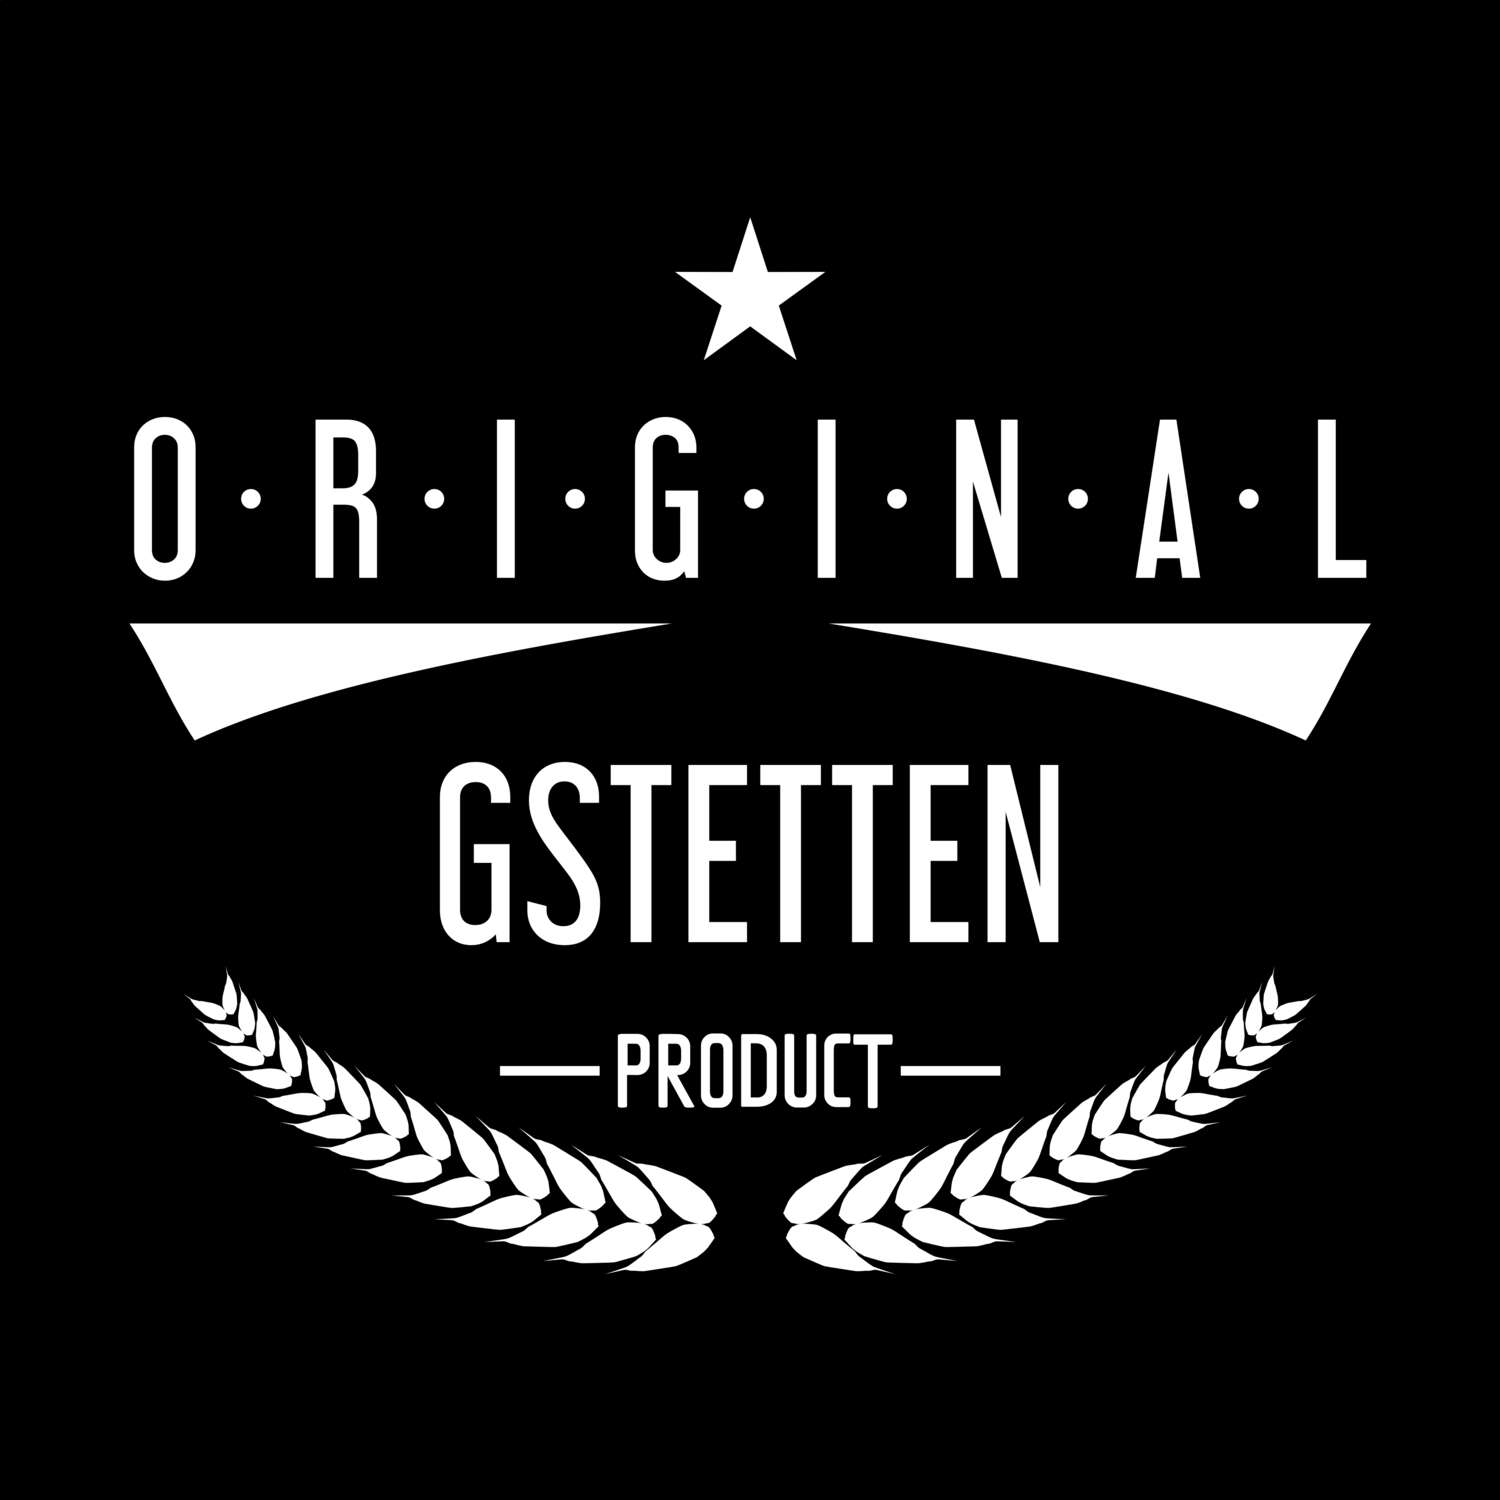 Gstetten T-Shirt »Original Product«